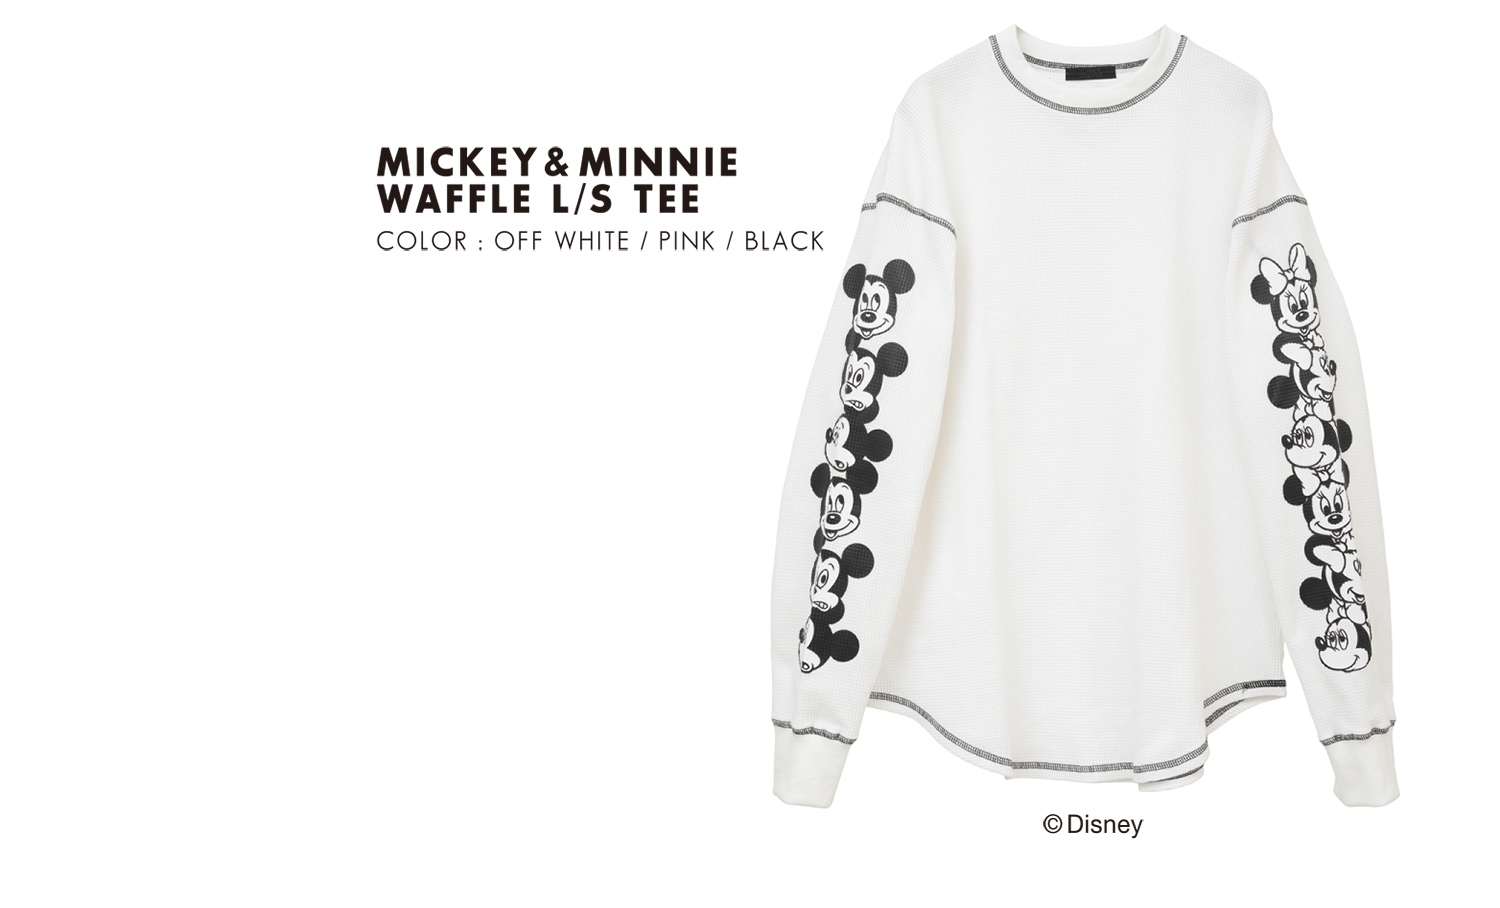 MICKEY & MINNIE WAFFLE L/S TEE